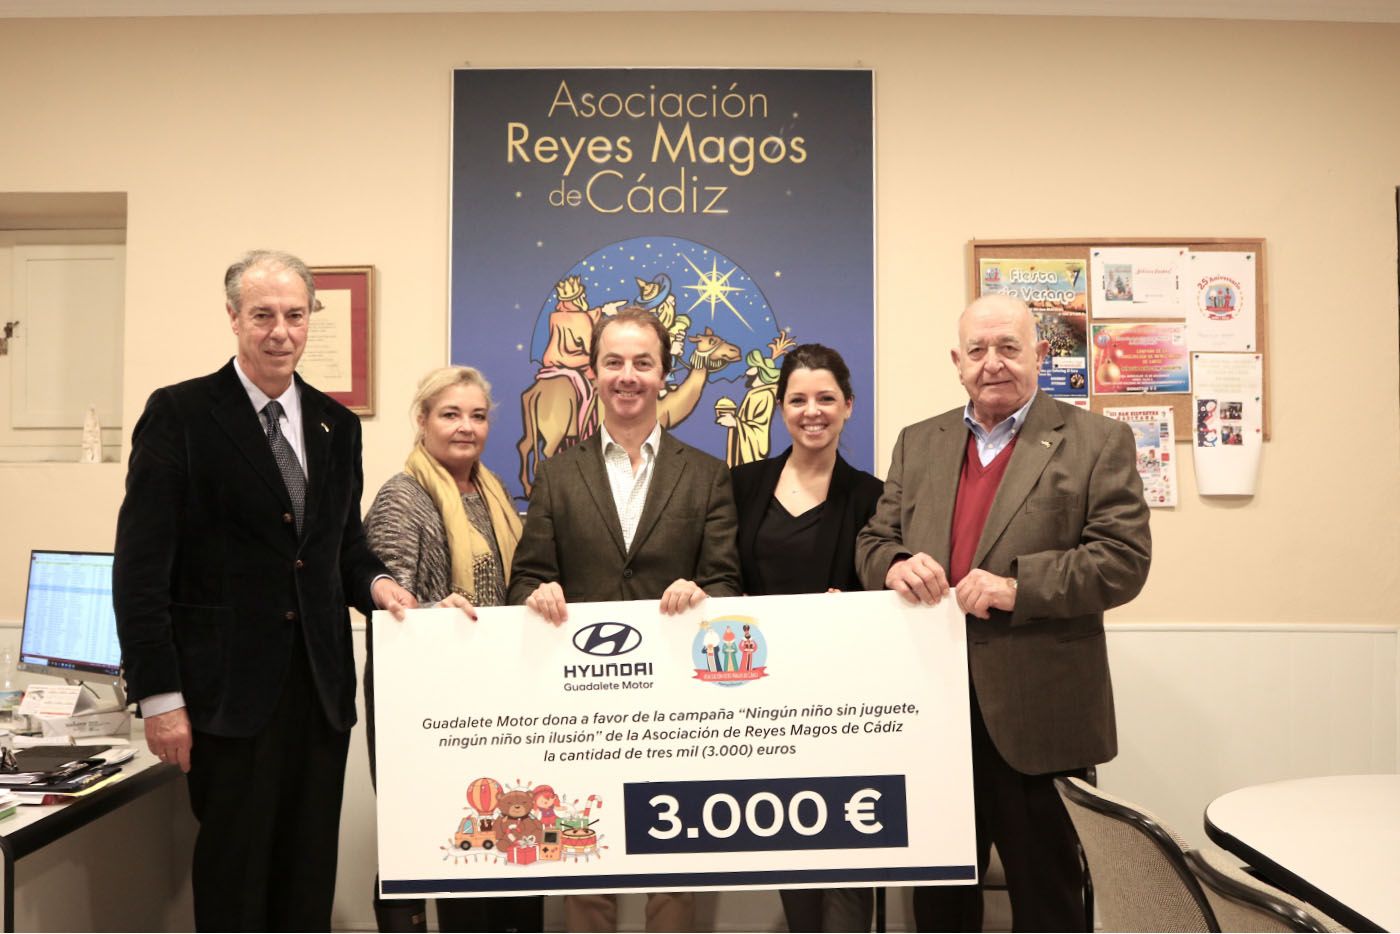 Guadalete Motor dona 3.000 euros a la Asociación de Reyes Magos de Cádiz